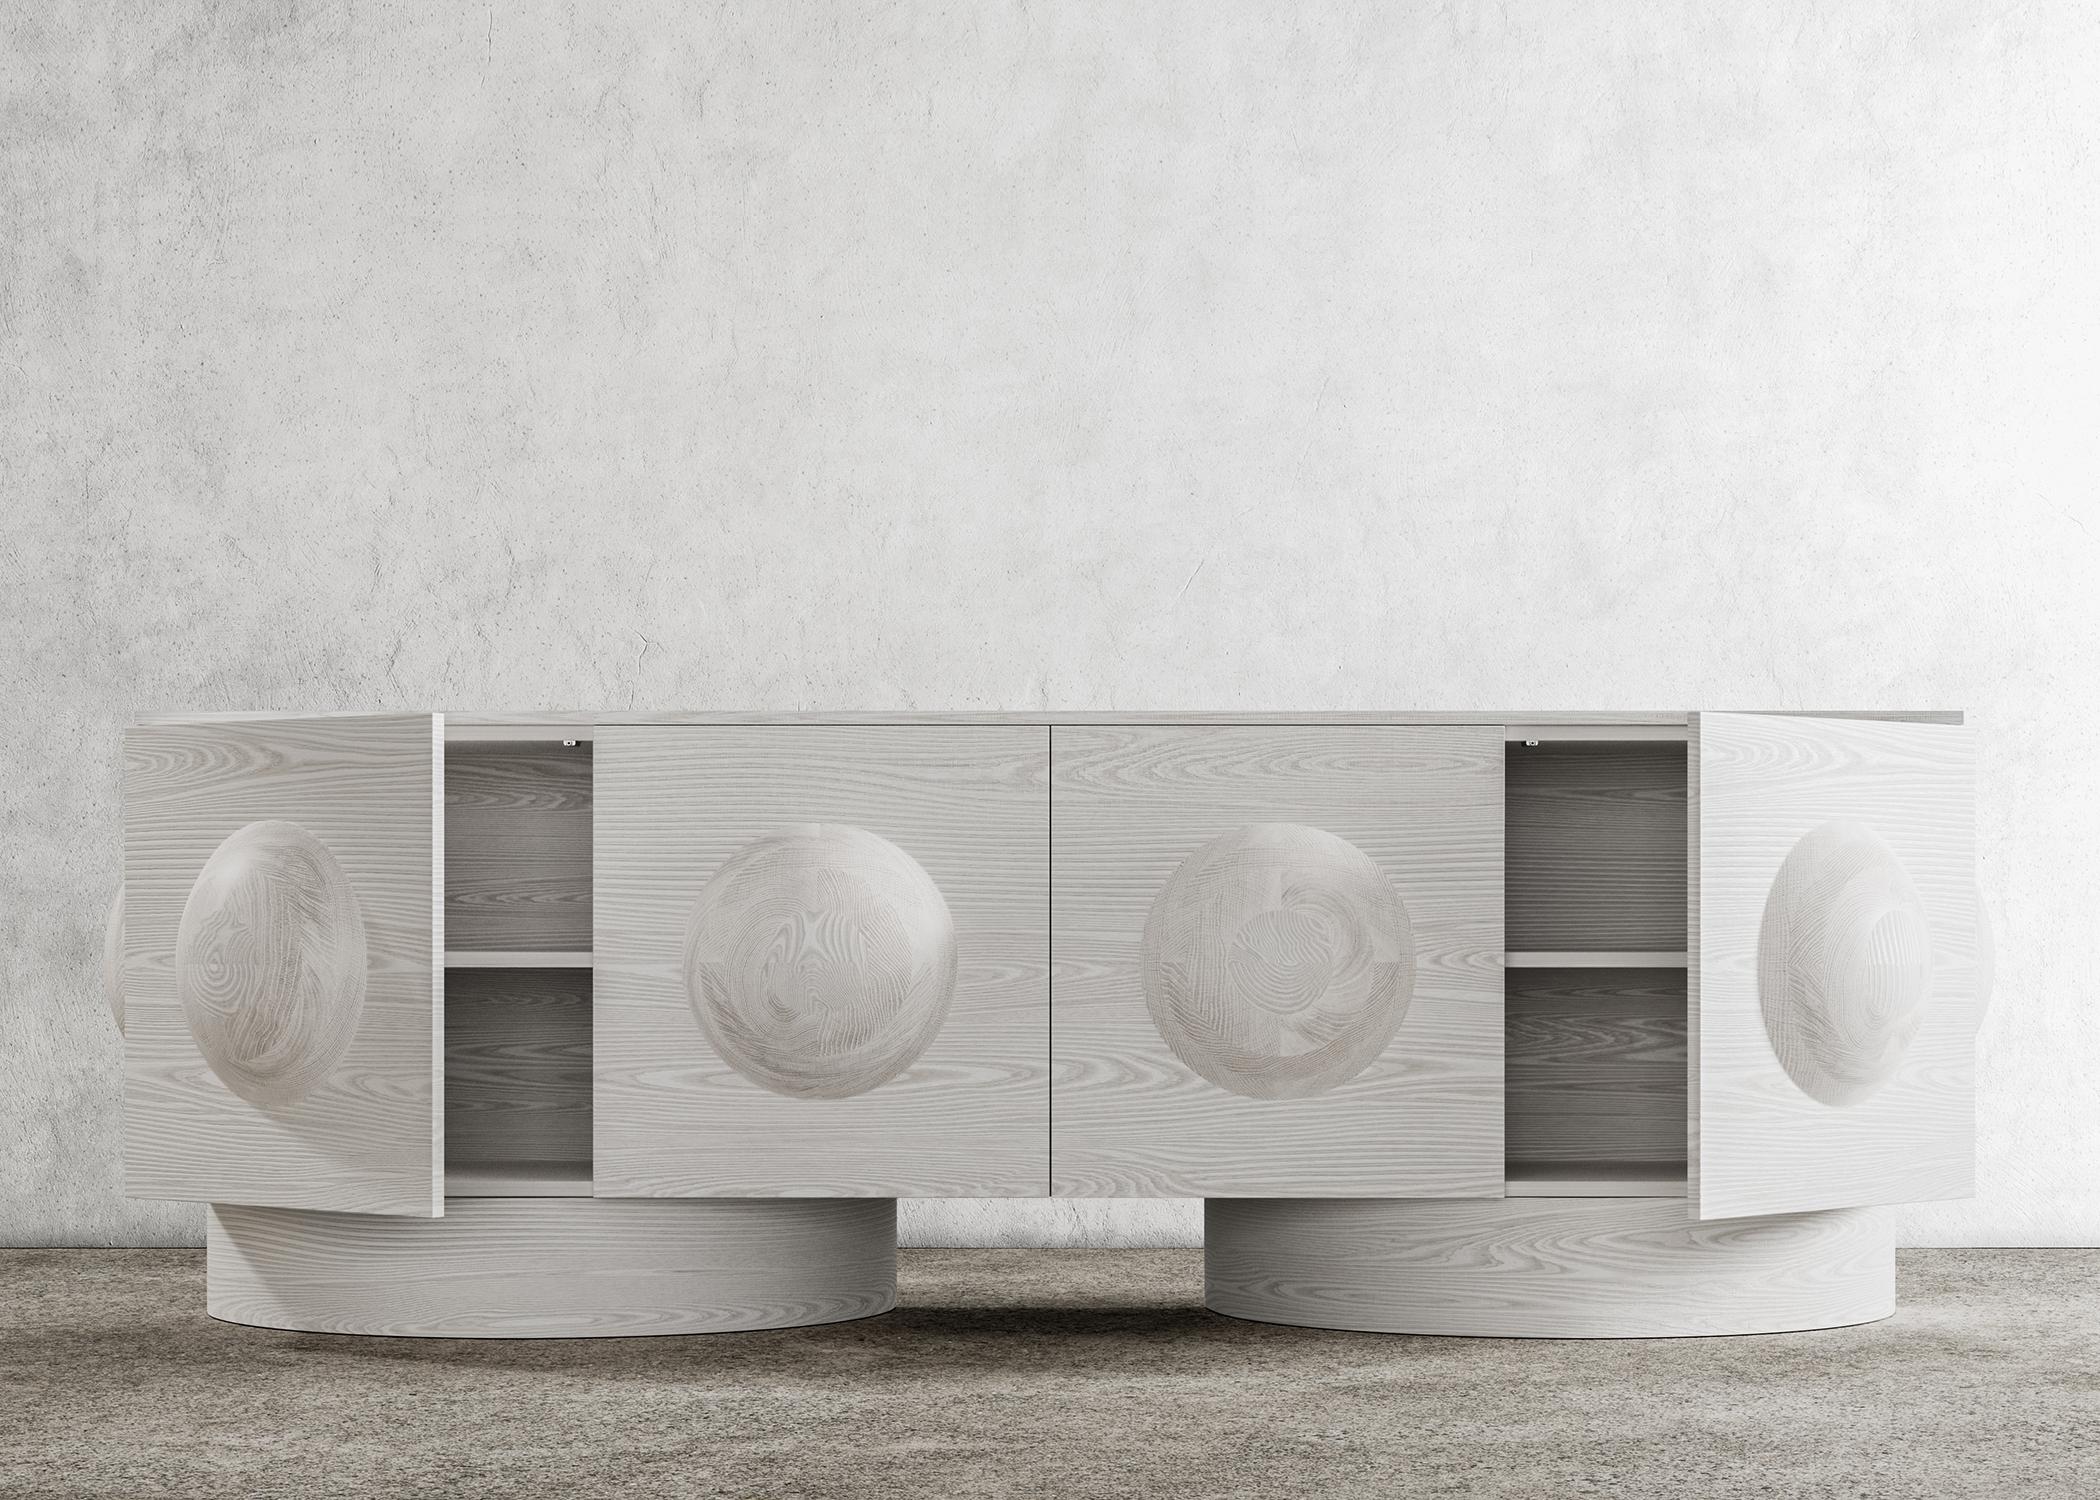 DOT CREDENZA - Structure et base moderne en chêne blanchi

La crédence Dot est un meuble contemporain doté d'un élément de design unique - une sphère en bois sculpté - et de socles en bois, qui lui confèrent une touche architecturale. Cette crédence